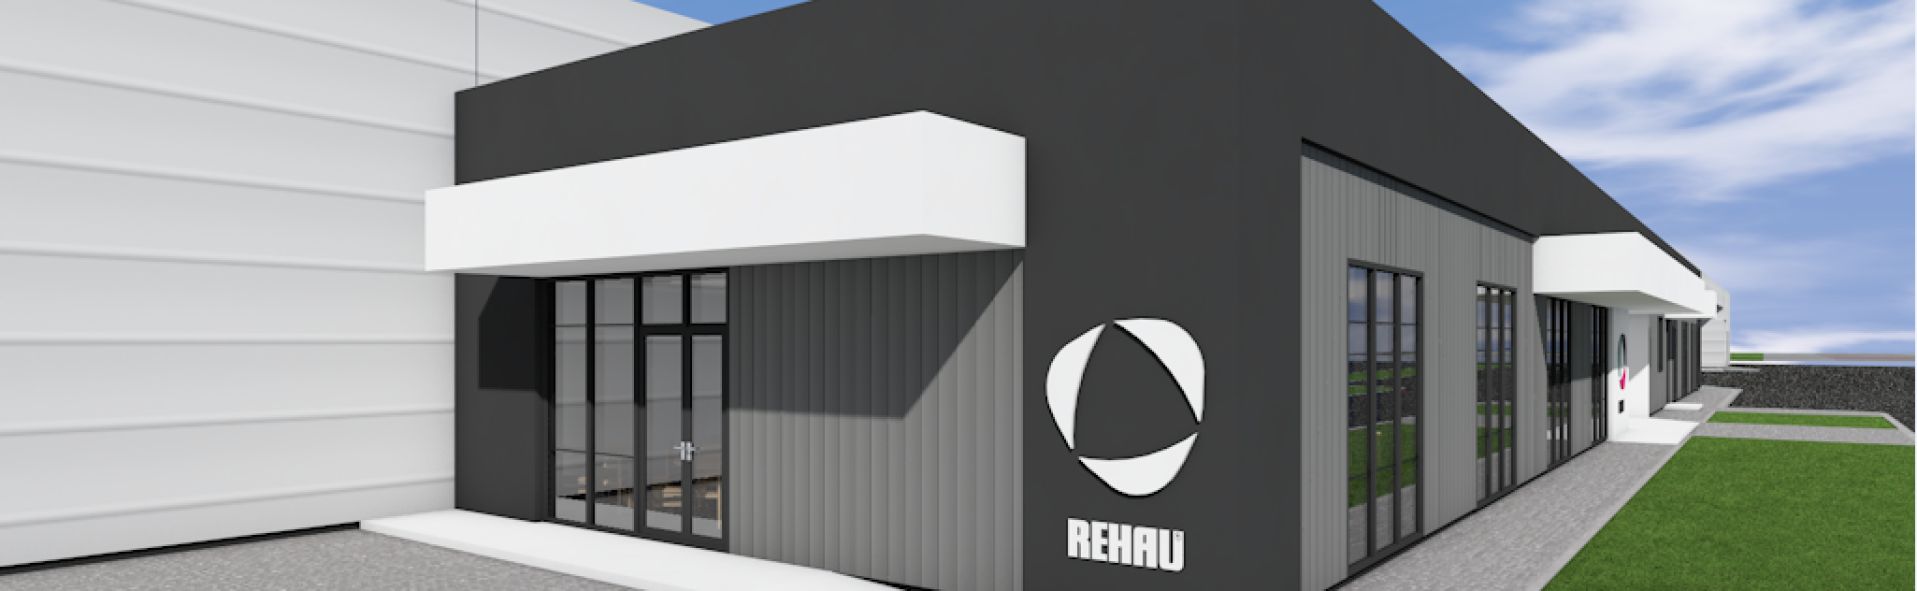 Rehau investește într-un nou hub regional în Sibiu